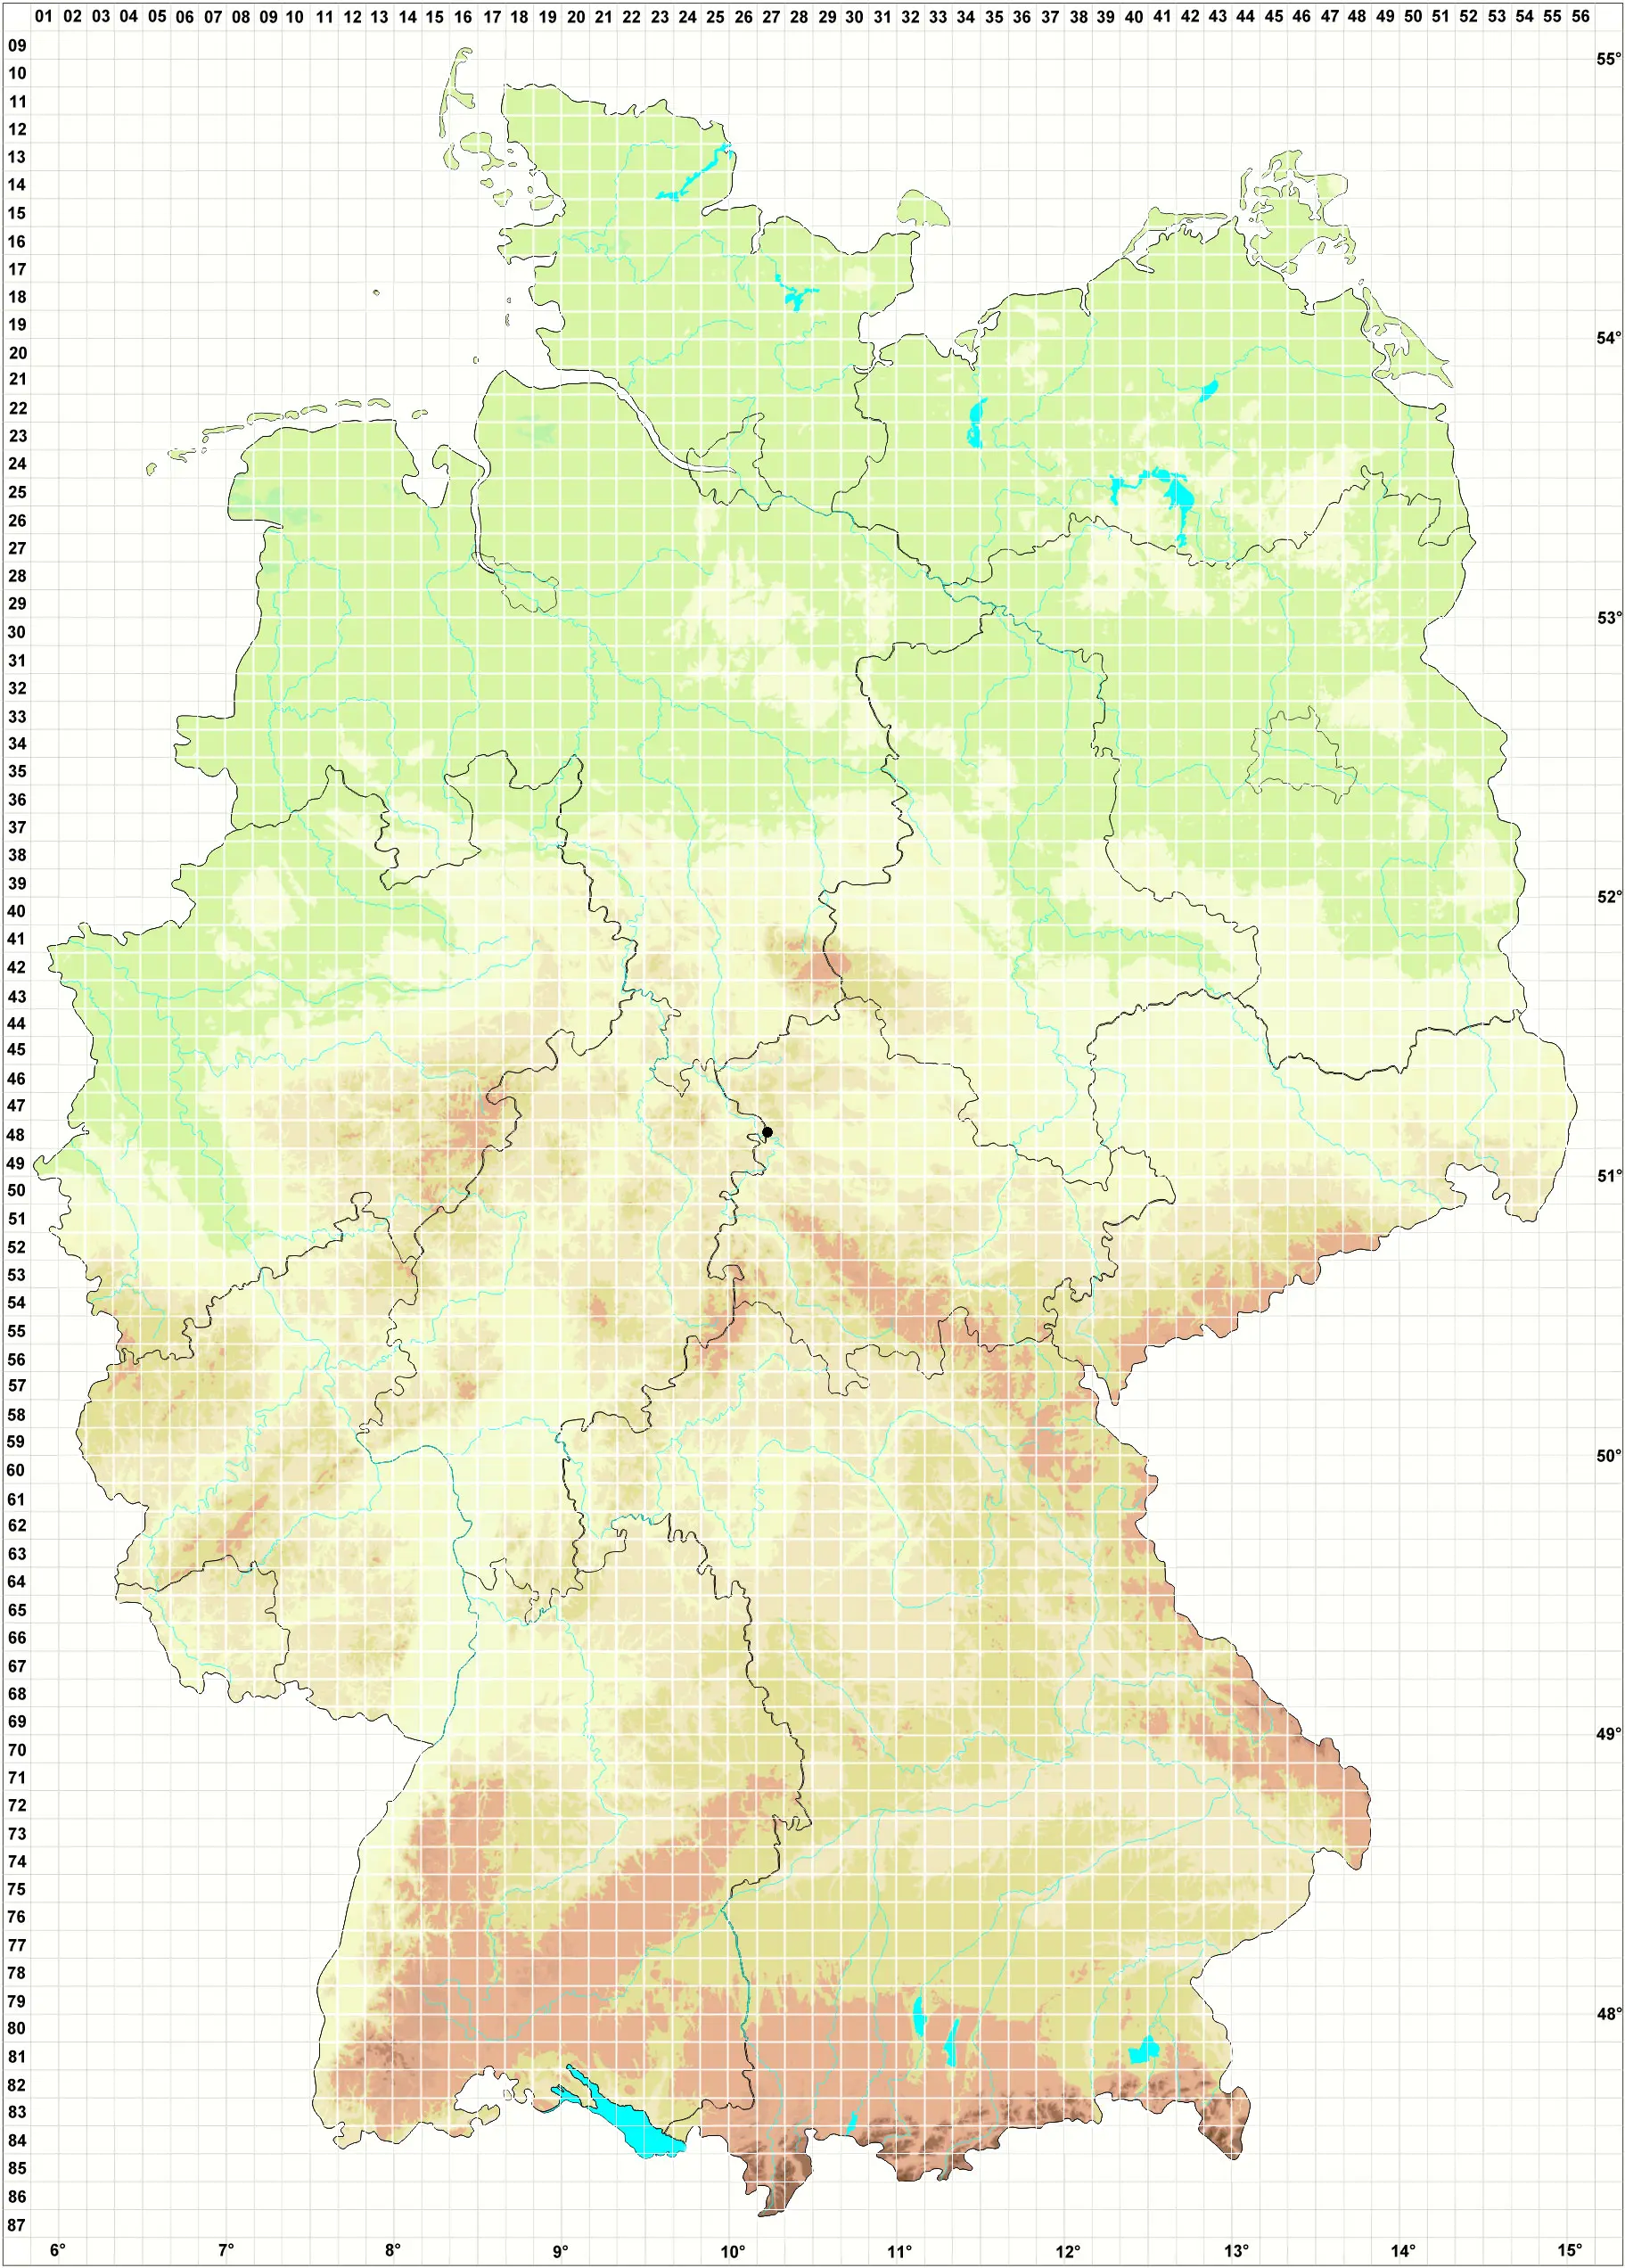 Karte H. Grünberg 16.06.2003